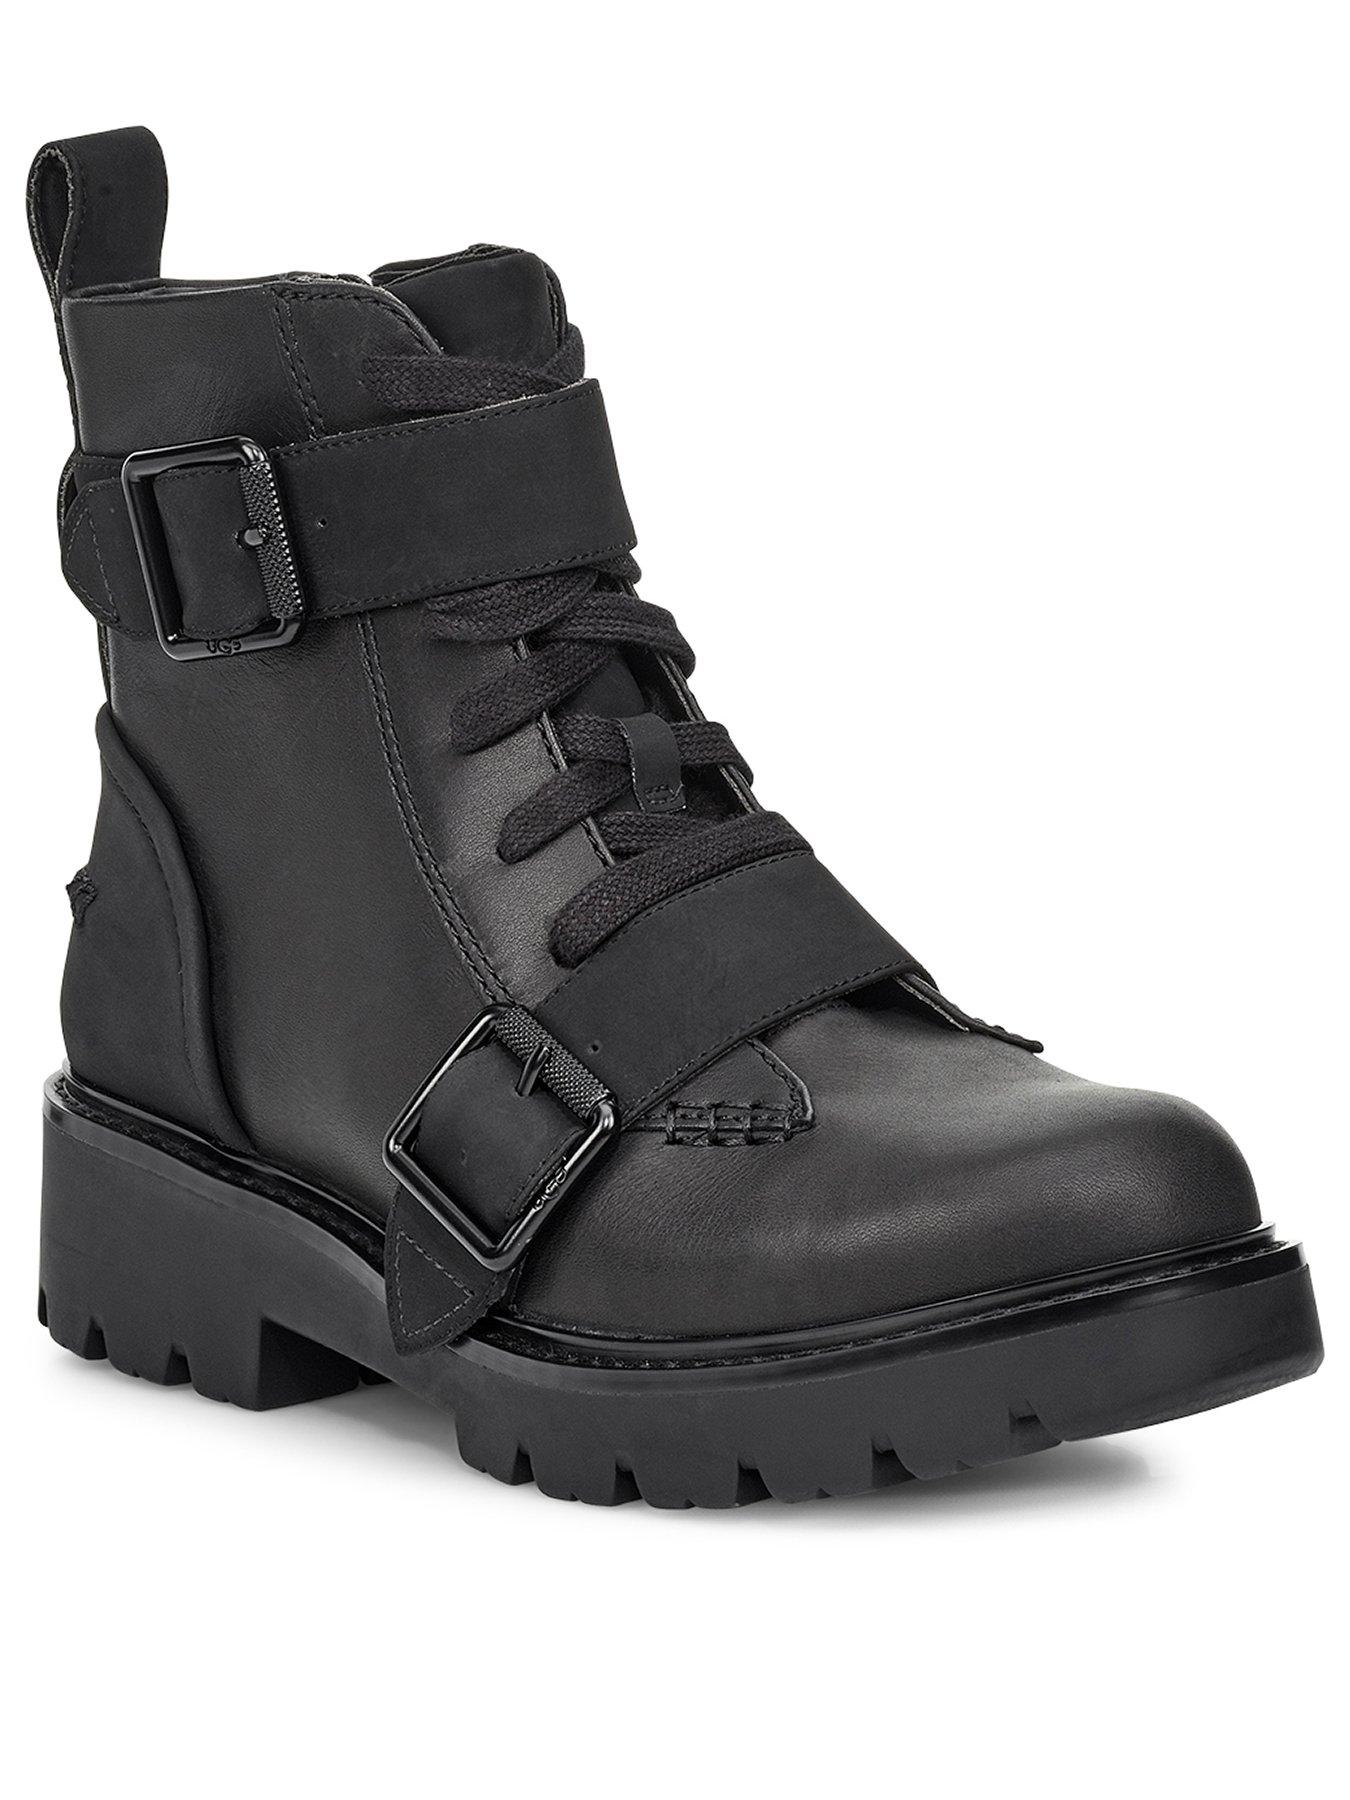 black ugg style boots uk